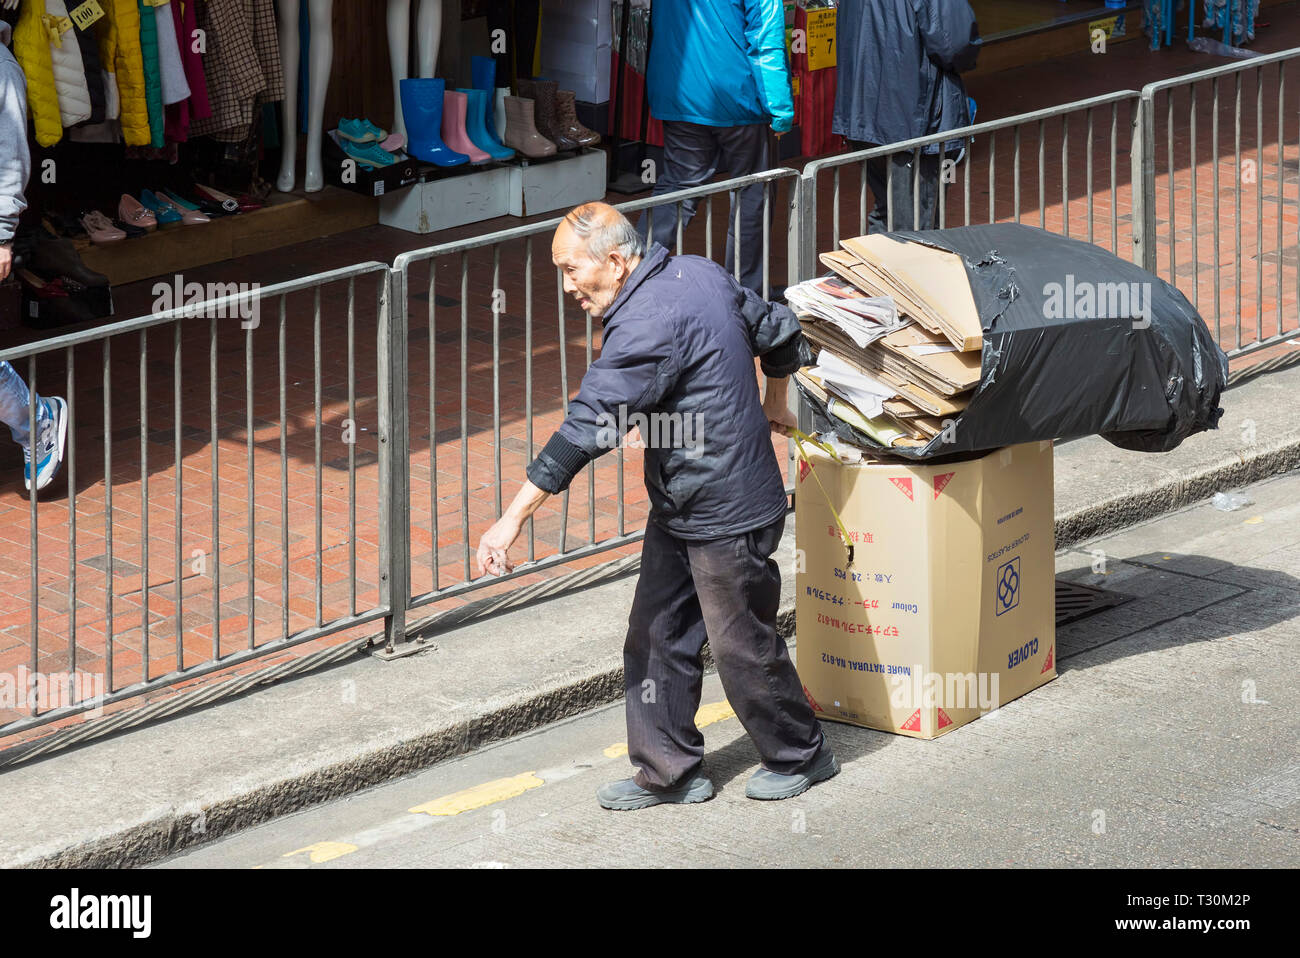 Old Chinese man recycling waste, Hong Kong, SAR, China Stock Photo